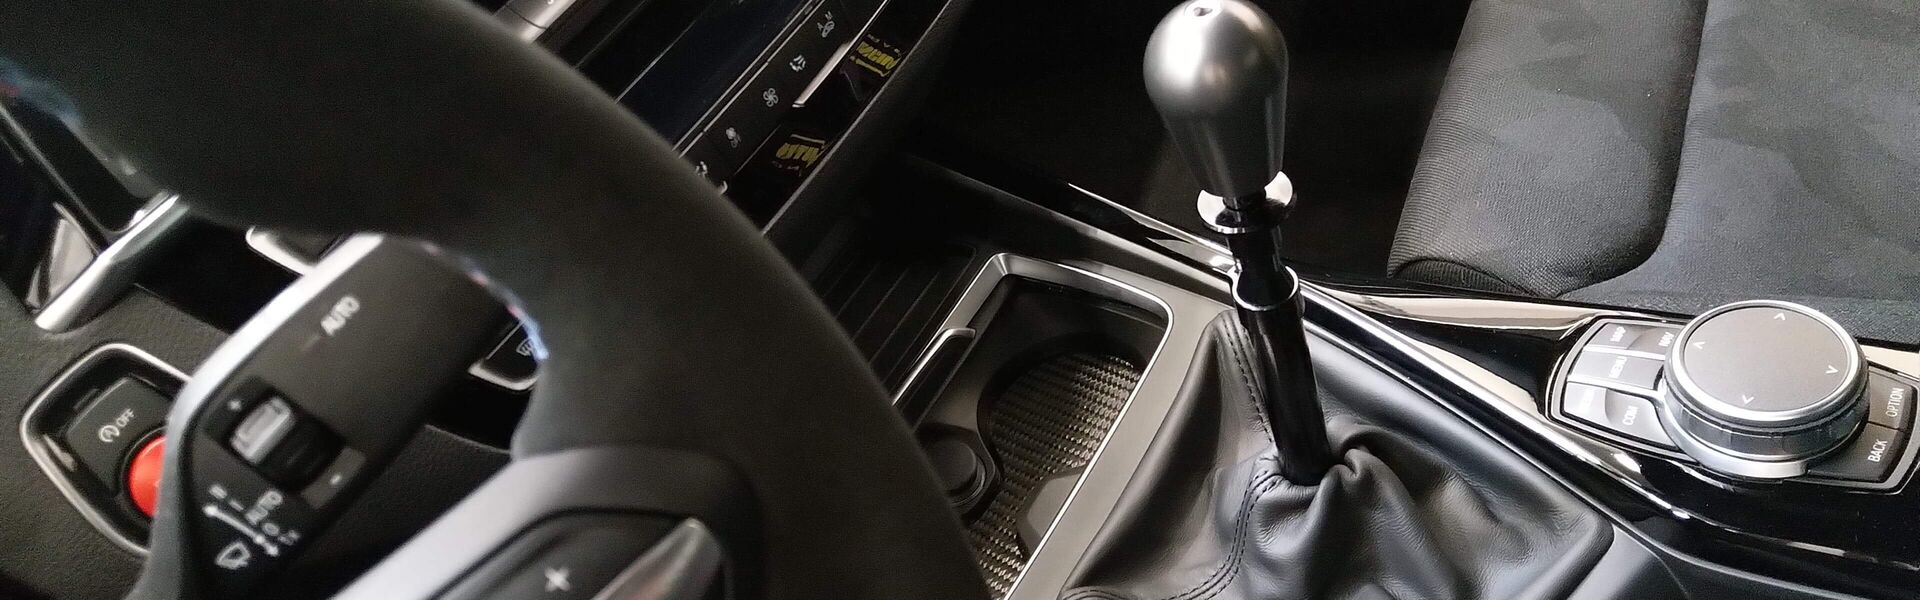 Převodovka/Řazení  pro automobil Lamborghini Aventador LP 700